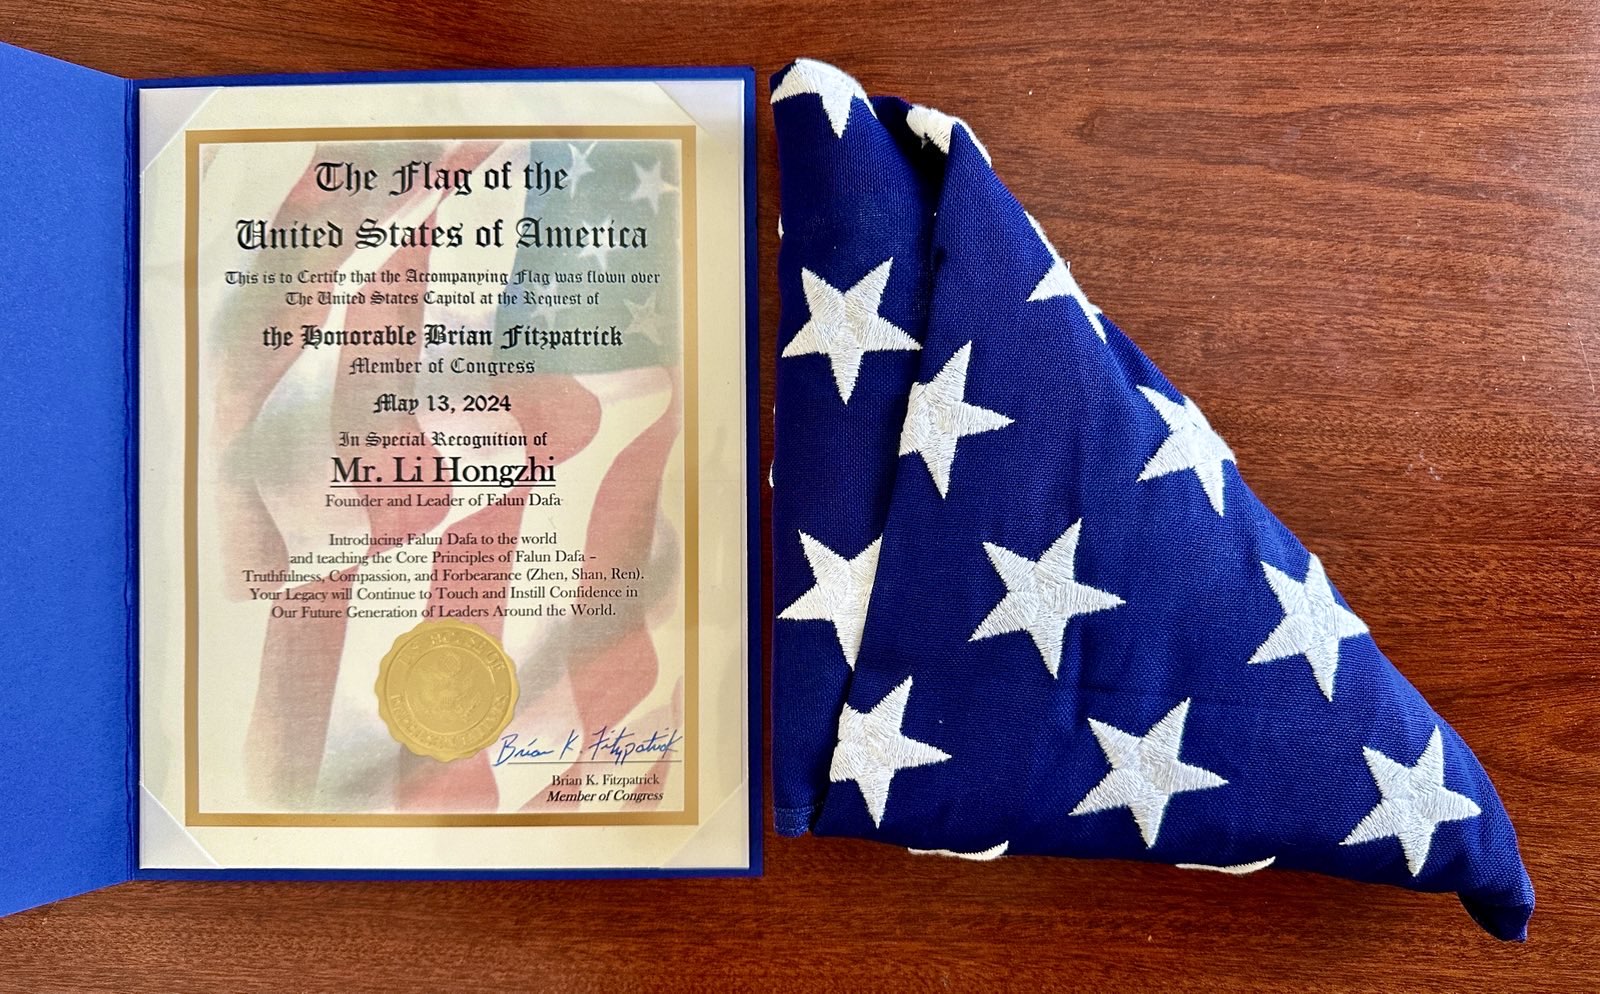 Nghị sĩ Hoa Kỳ Brian Fitzpatrick của tiểu bang Pennsylvania đã trao tặng một lá cờ và thư khen ngợi cho học viên Pháp Luân Công Jennie Sheeks để chúc mừng ngày Pháp Luân Đại Pháp Thế Giới, cũng như để tỏ lòng kính trọng đối với Đại Sư Lý Hồng Chí, nhà sáng lập Pháp Luân Công. (Ảnh: Đăng dưới sự cho phép của cô Jennie Sheeks)